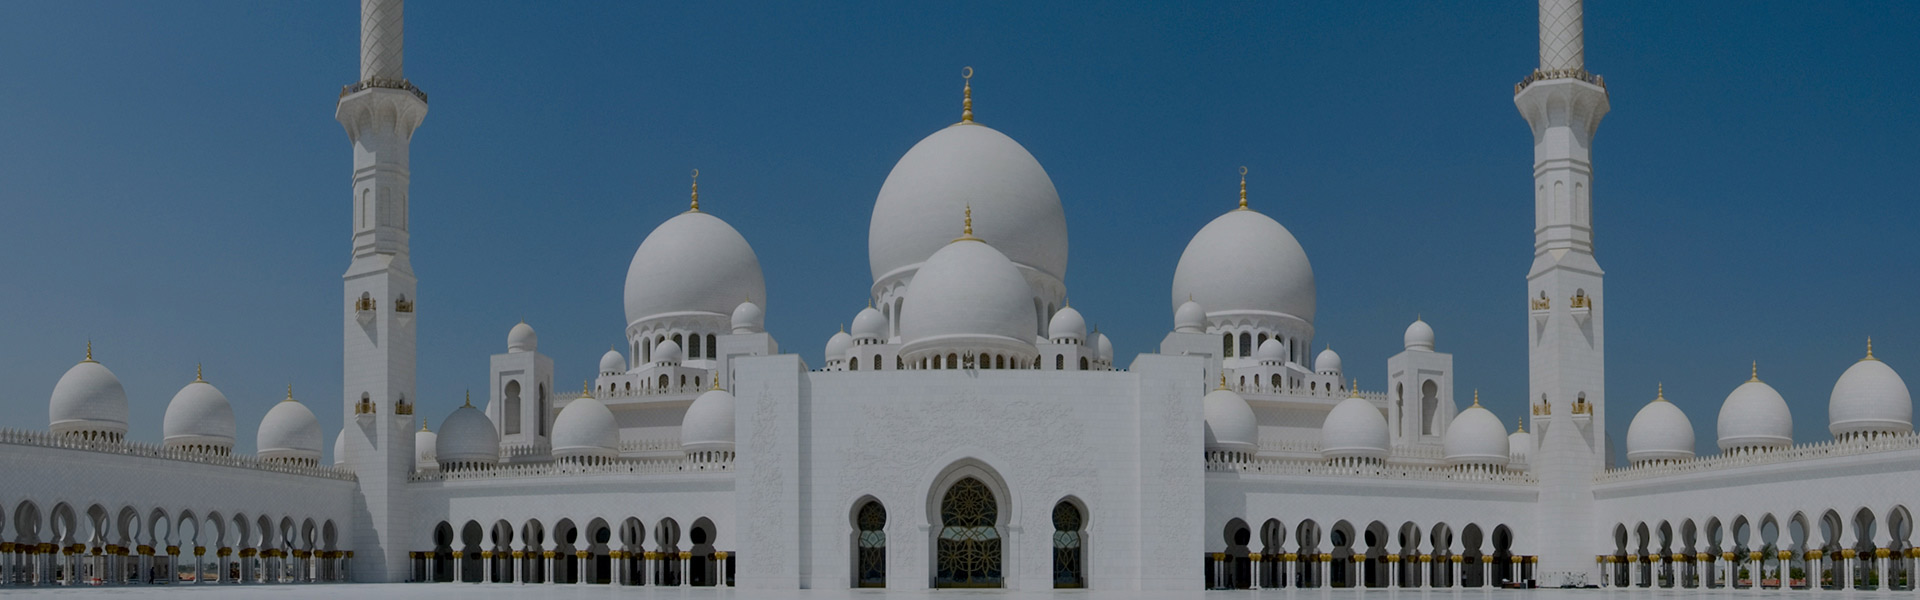 Sheikh Zayed Grand Mosque Abu Dhabi | Big Bus Tours